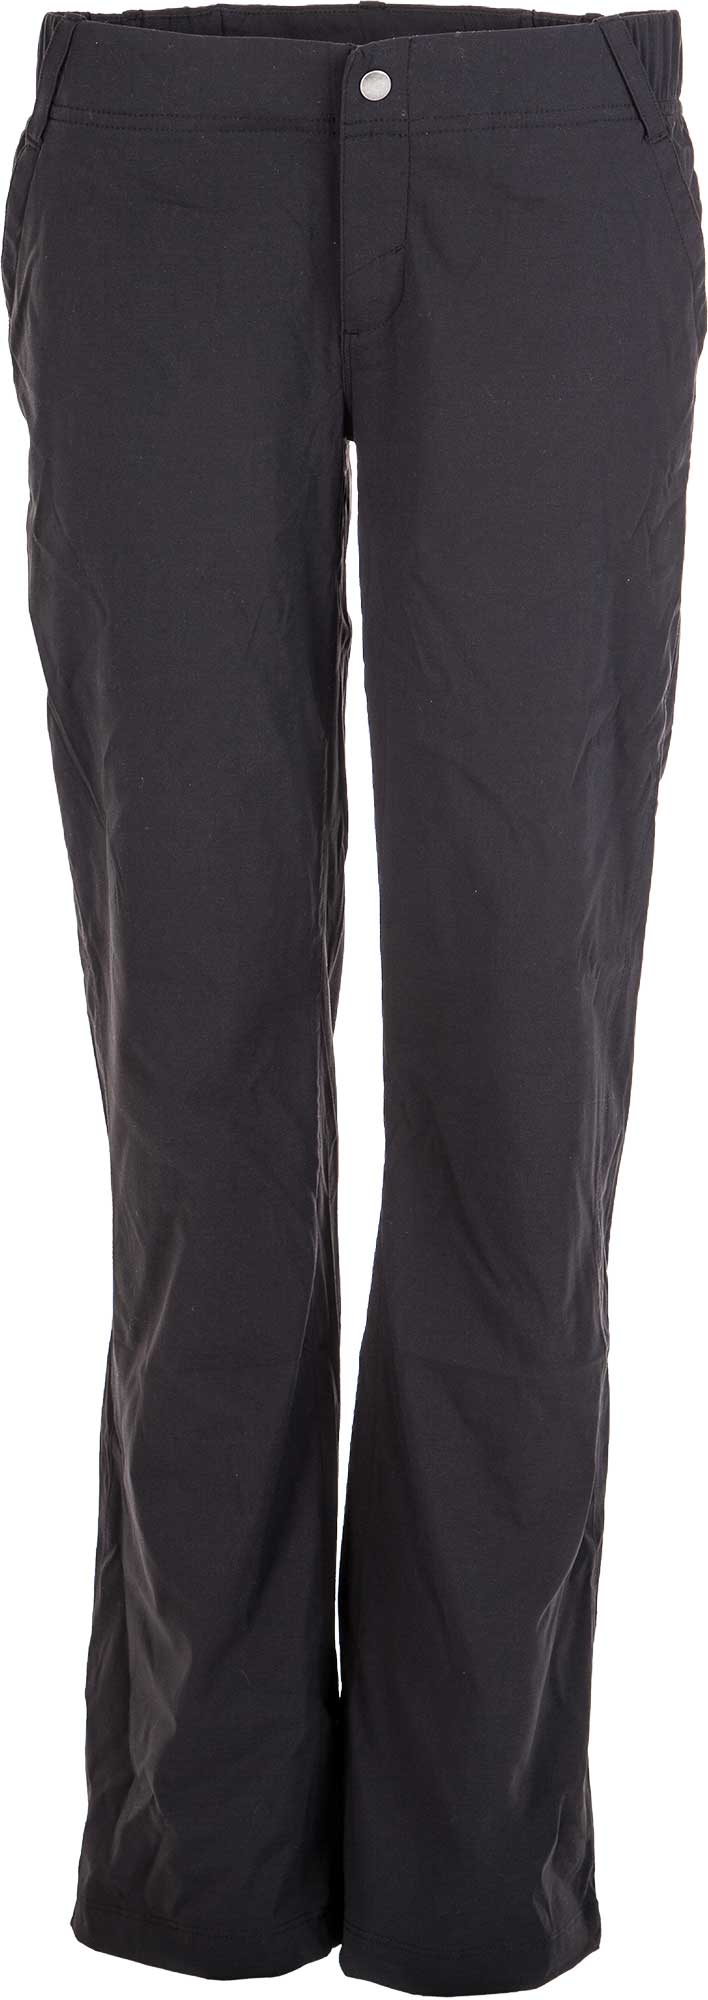 ANYTIME OUTDOOR FULL LEG PANT - Women´s pants